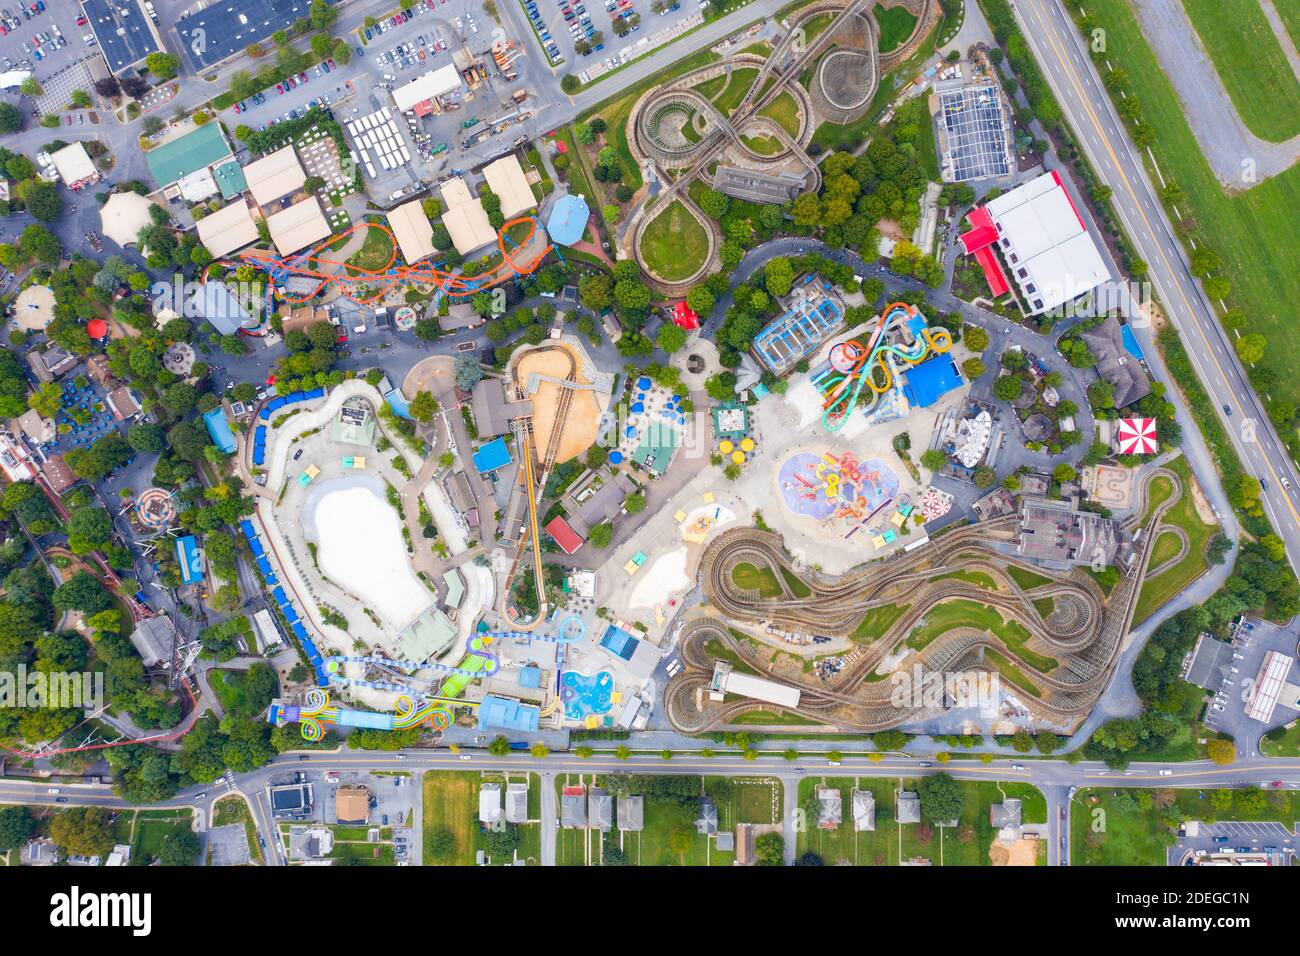 Vue aérienne du parc d'attractions Hersheypark, Hershey, PA, États-Unis Banque D'Images